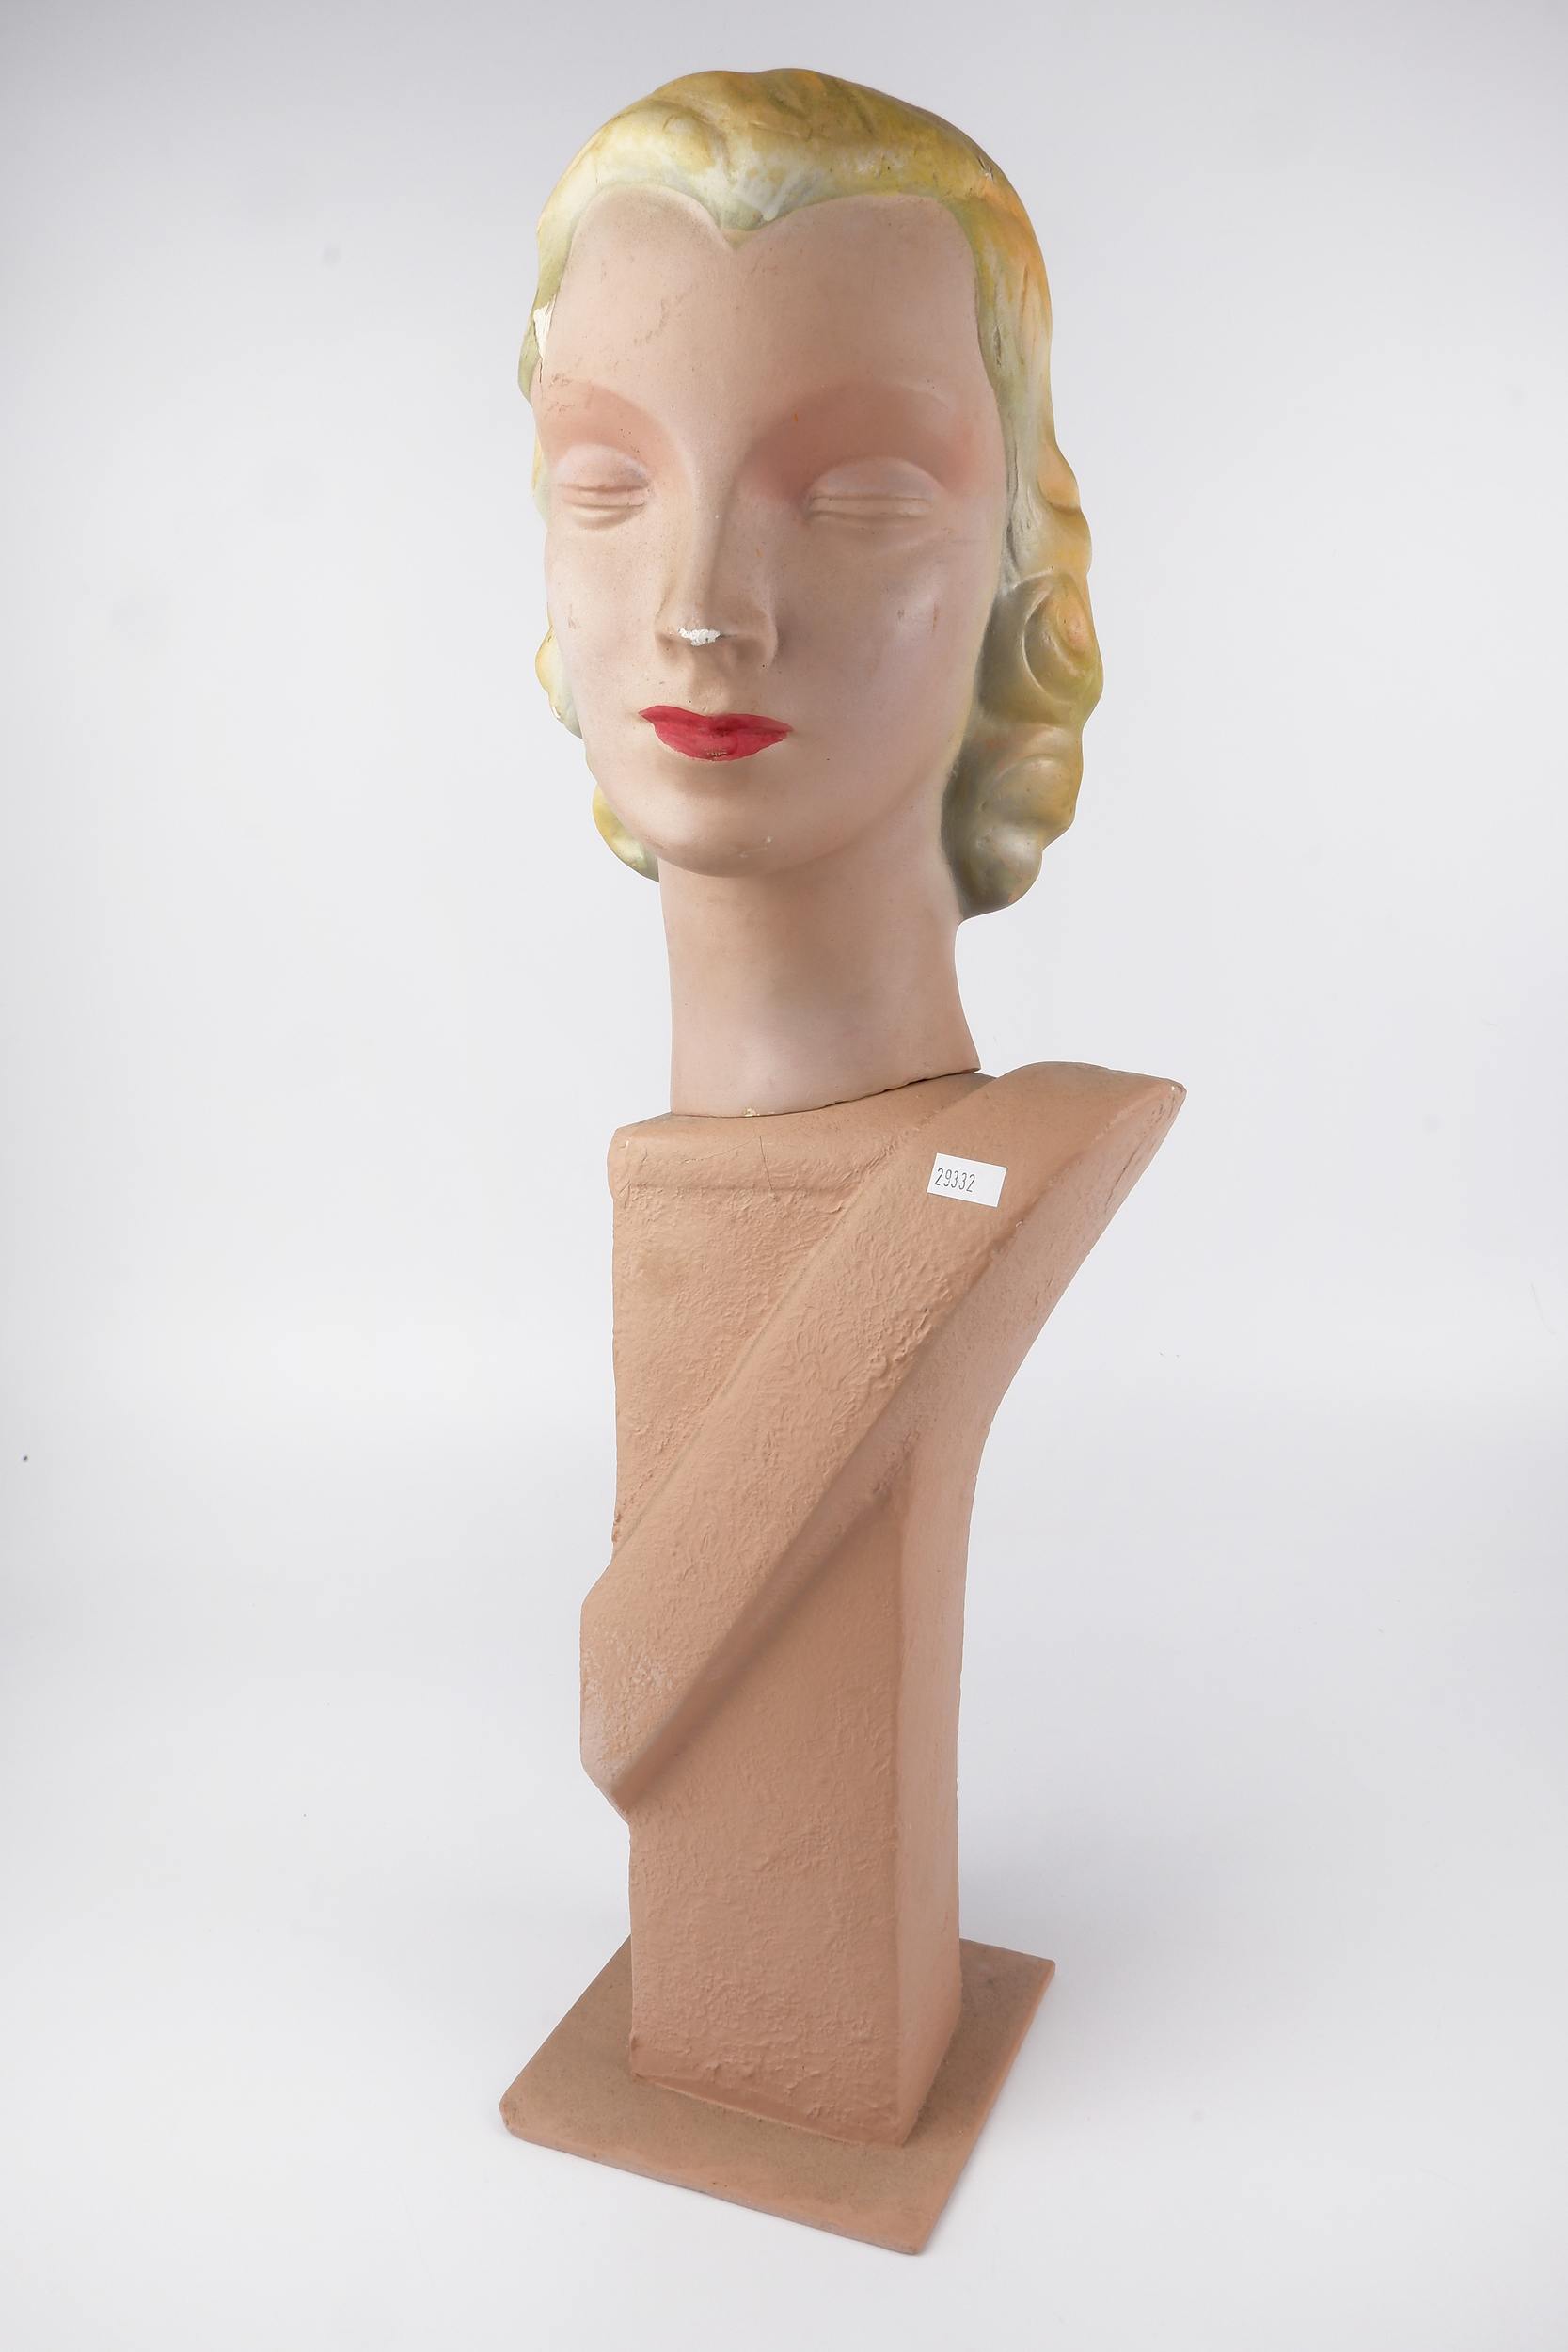 'Art Deco Painted Plaster Female Mannequin Head, Circa 1940s'